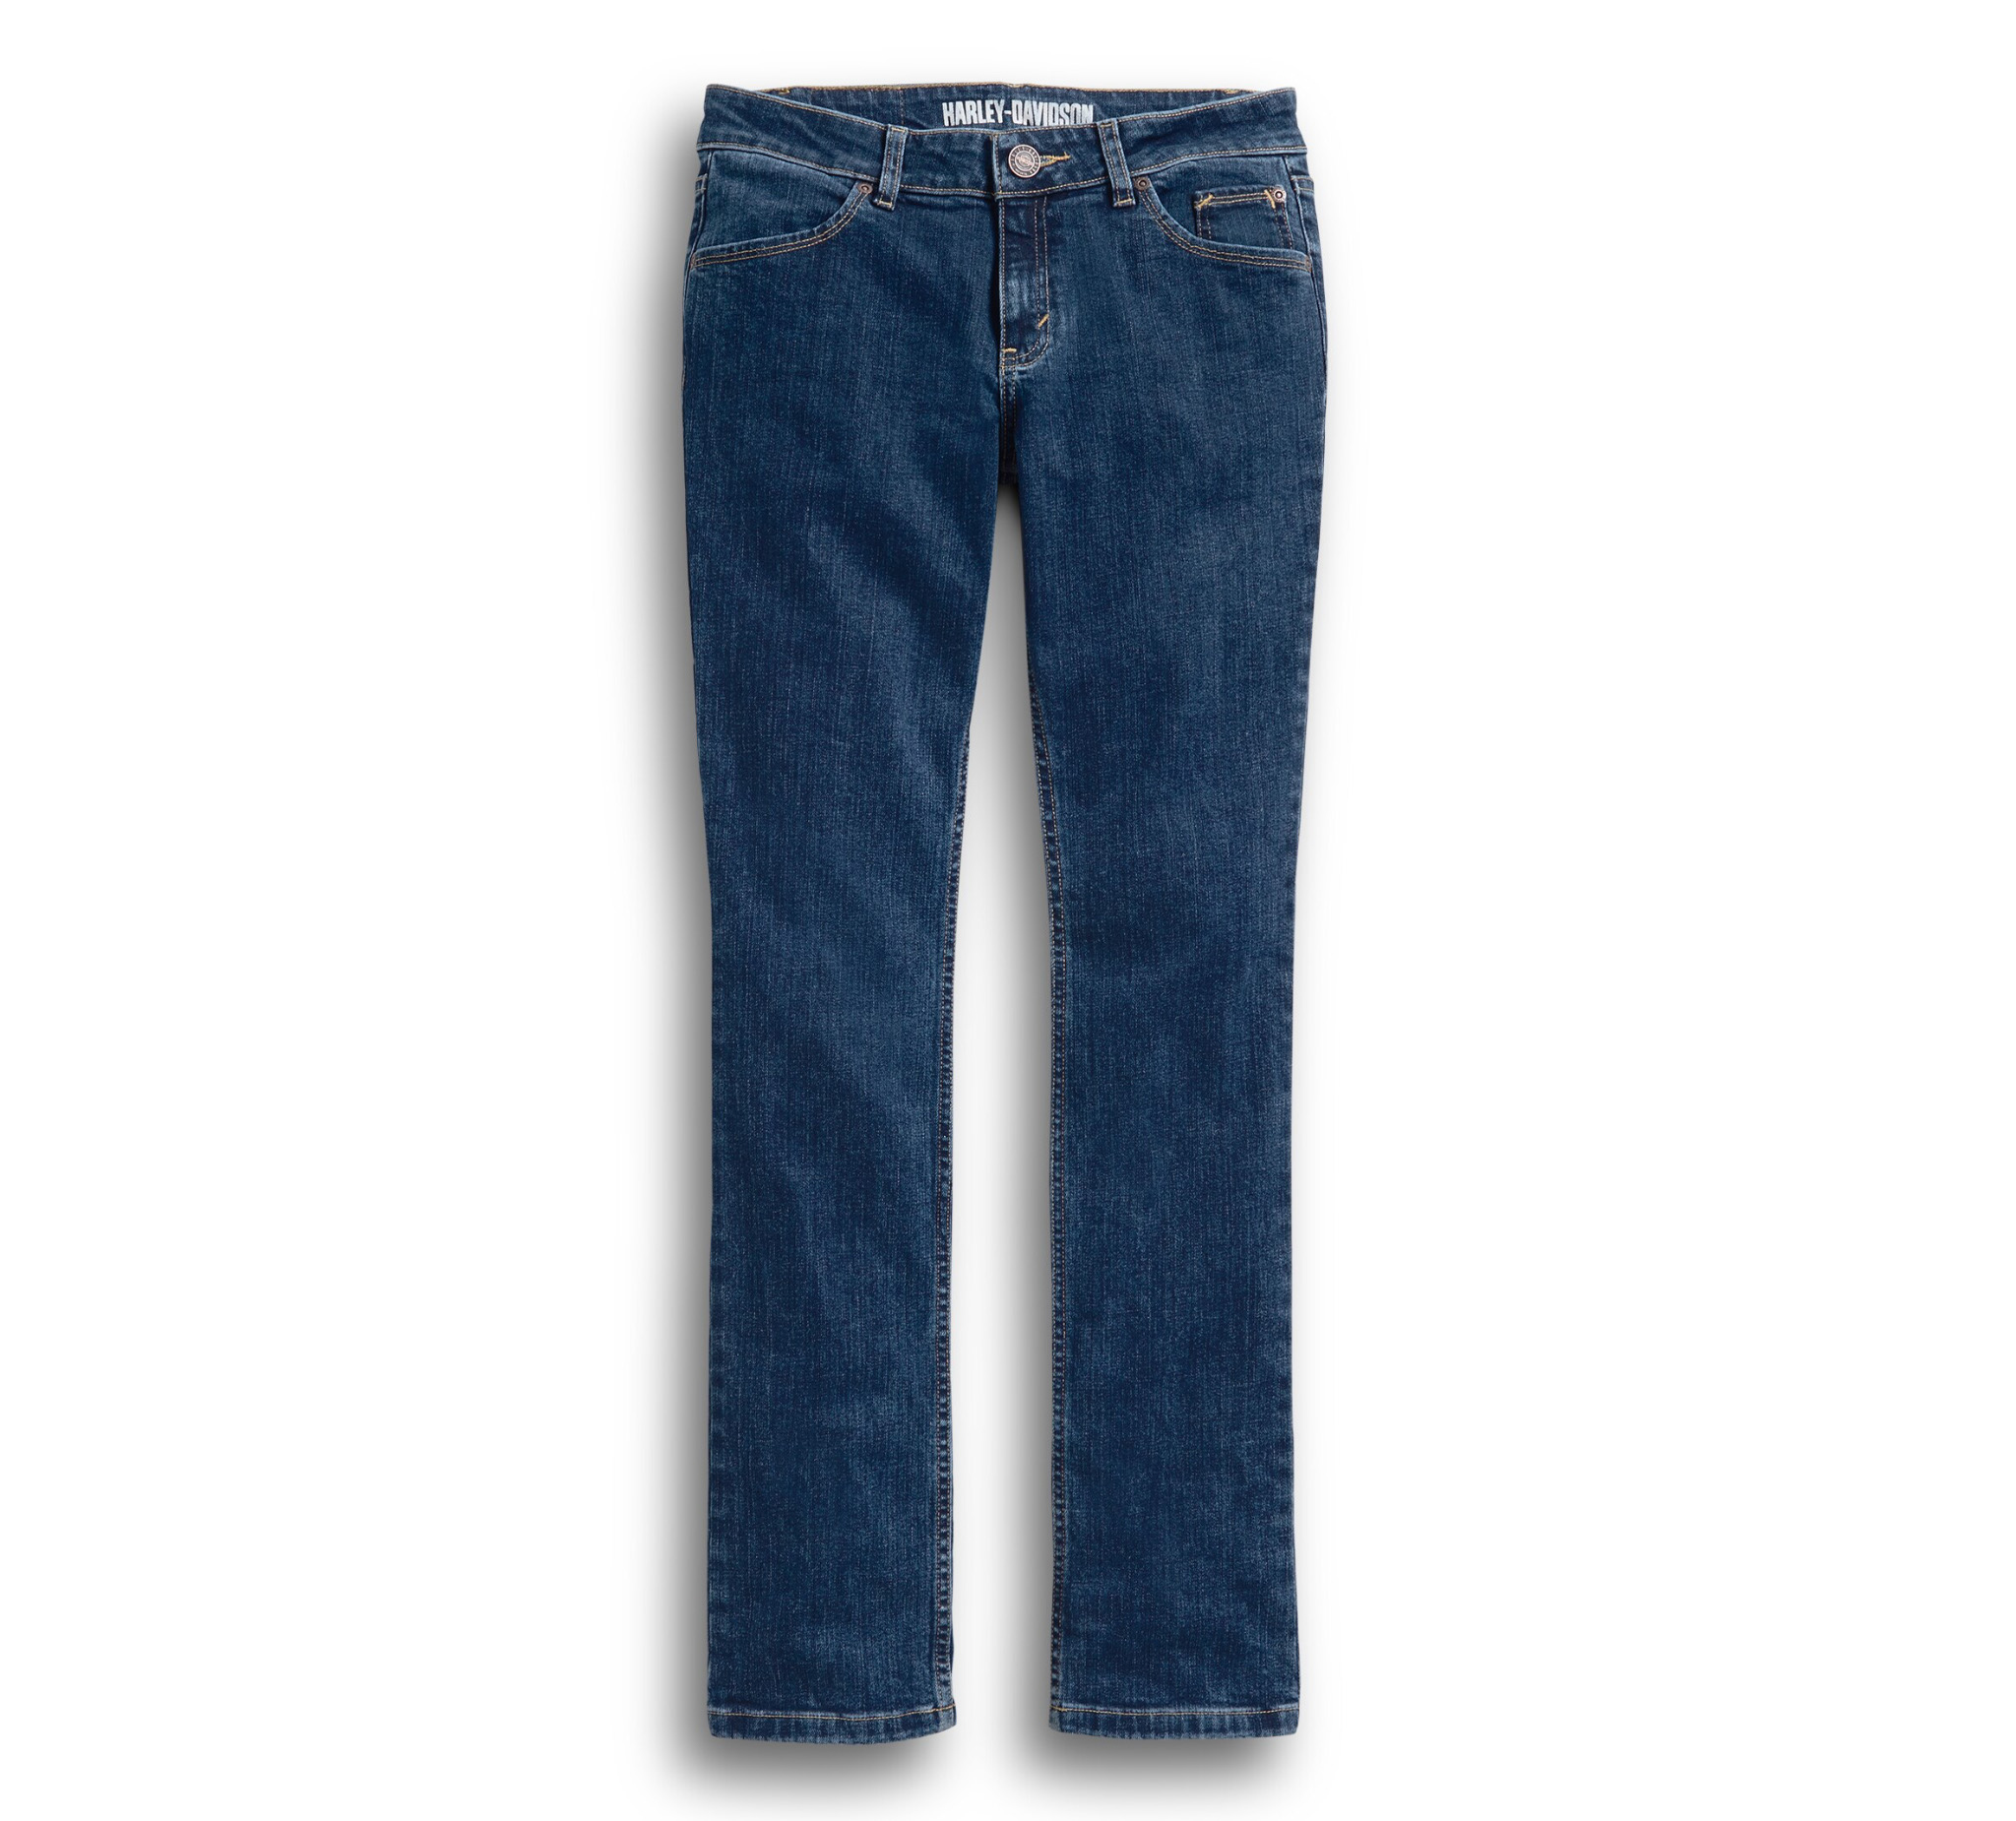 harley davidson blue jeans